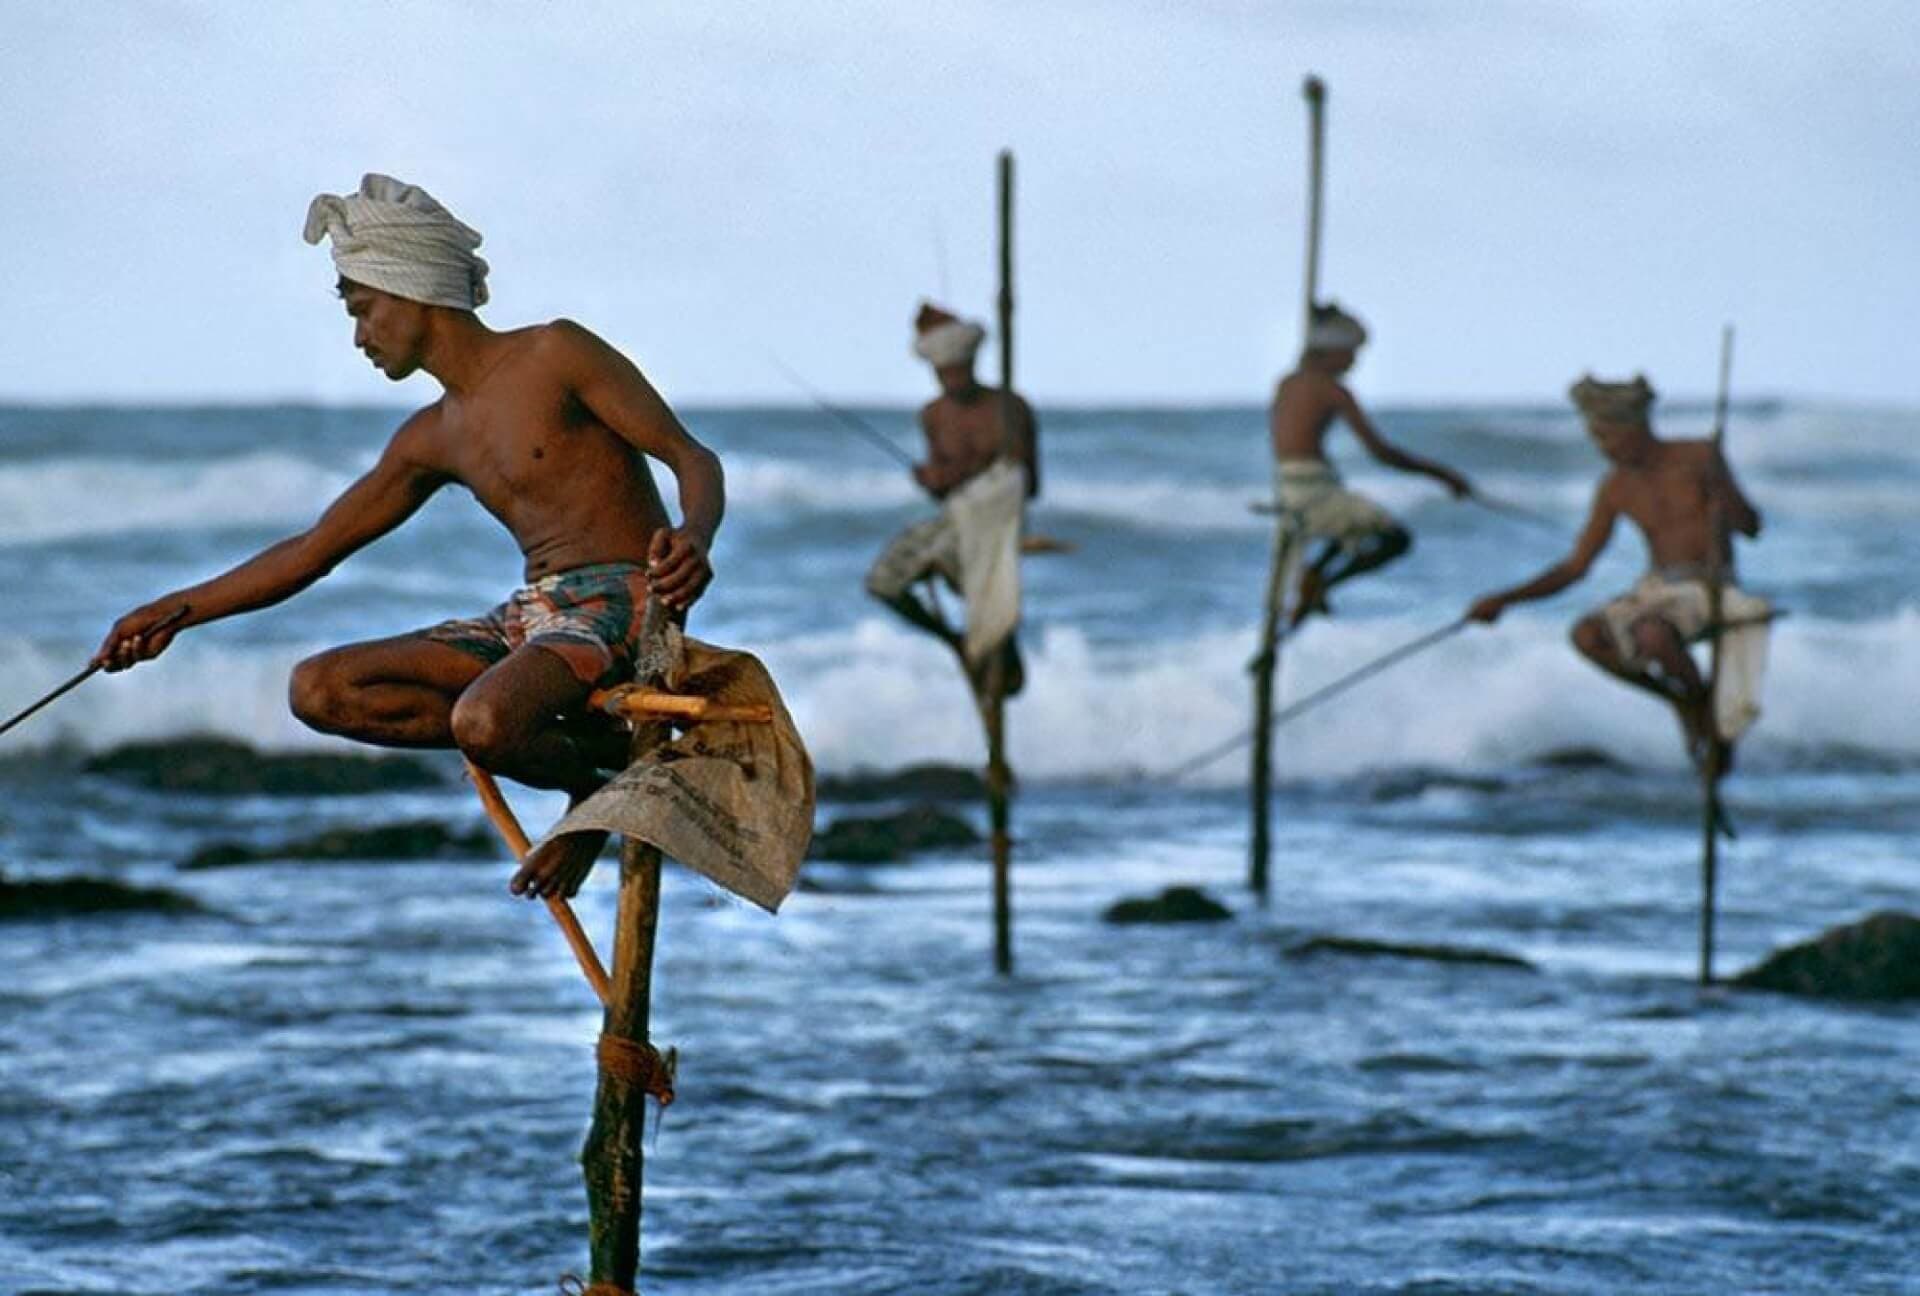 الصيد على ركائز وهي طريقة صيد فريدة من نوعها في الساحل الجنوبي في سري لانكا